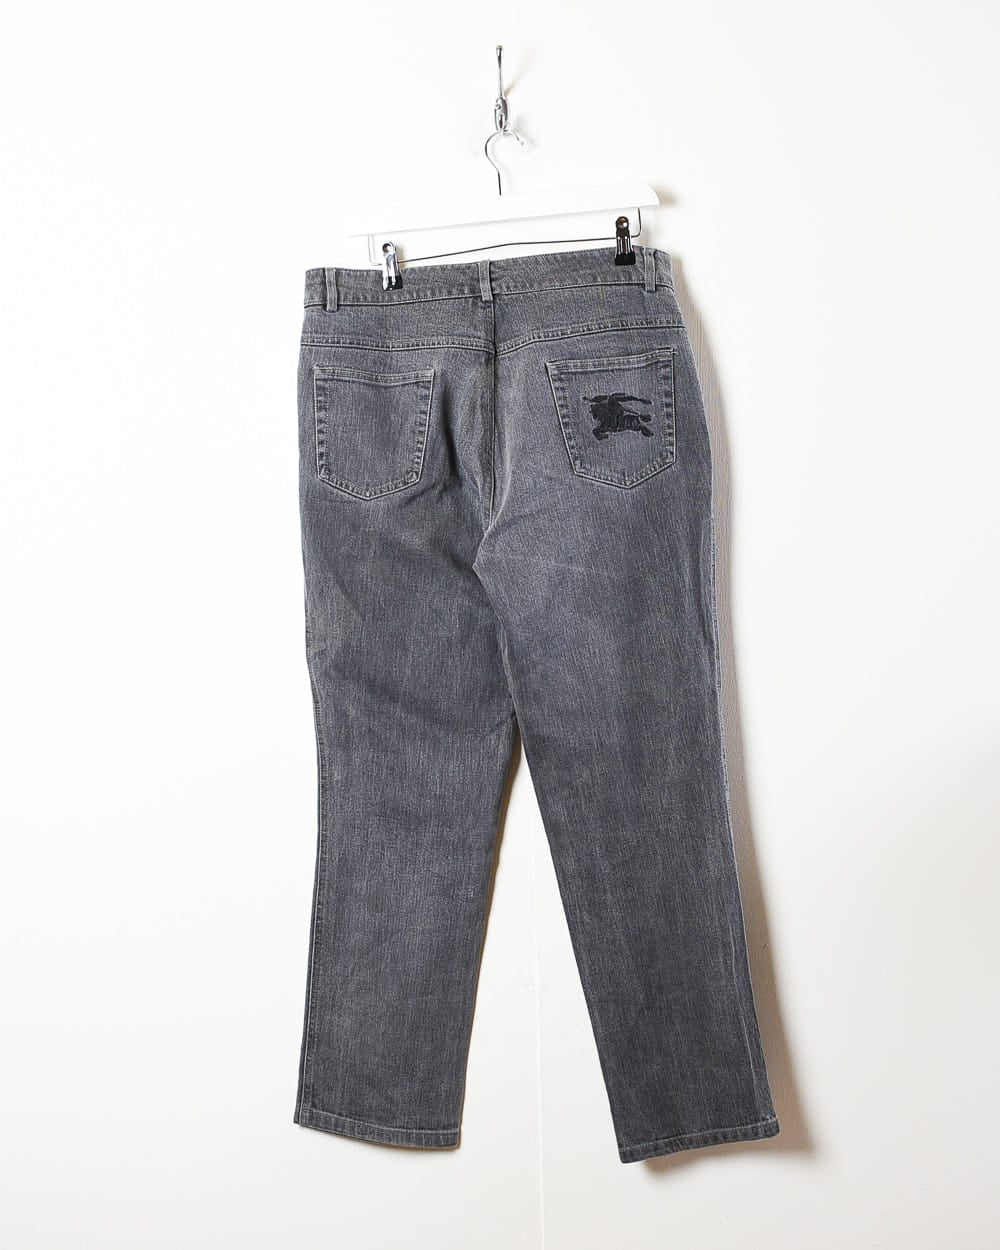 Grey Burberry Jeans - W34 L29